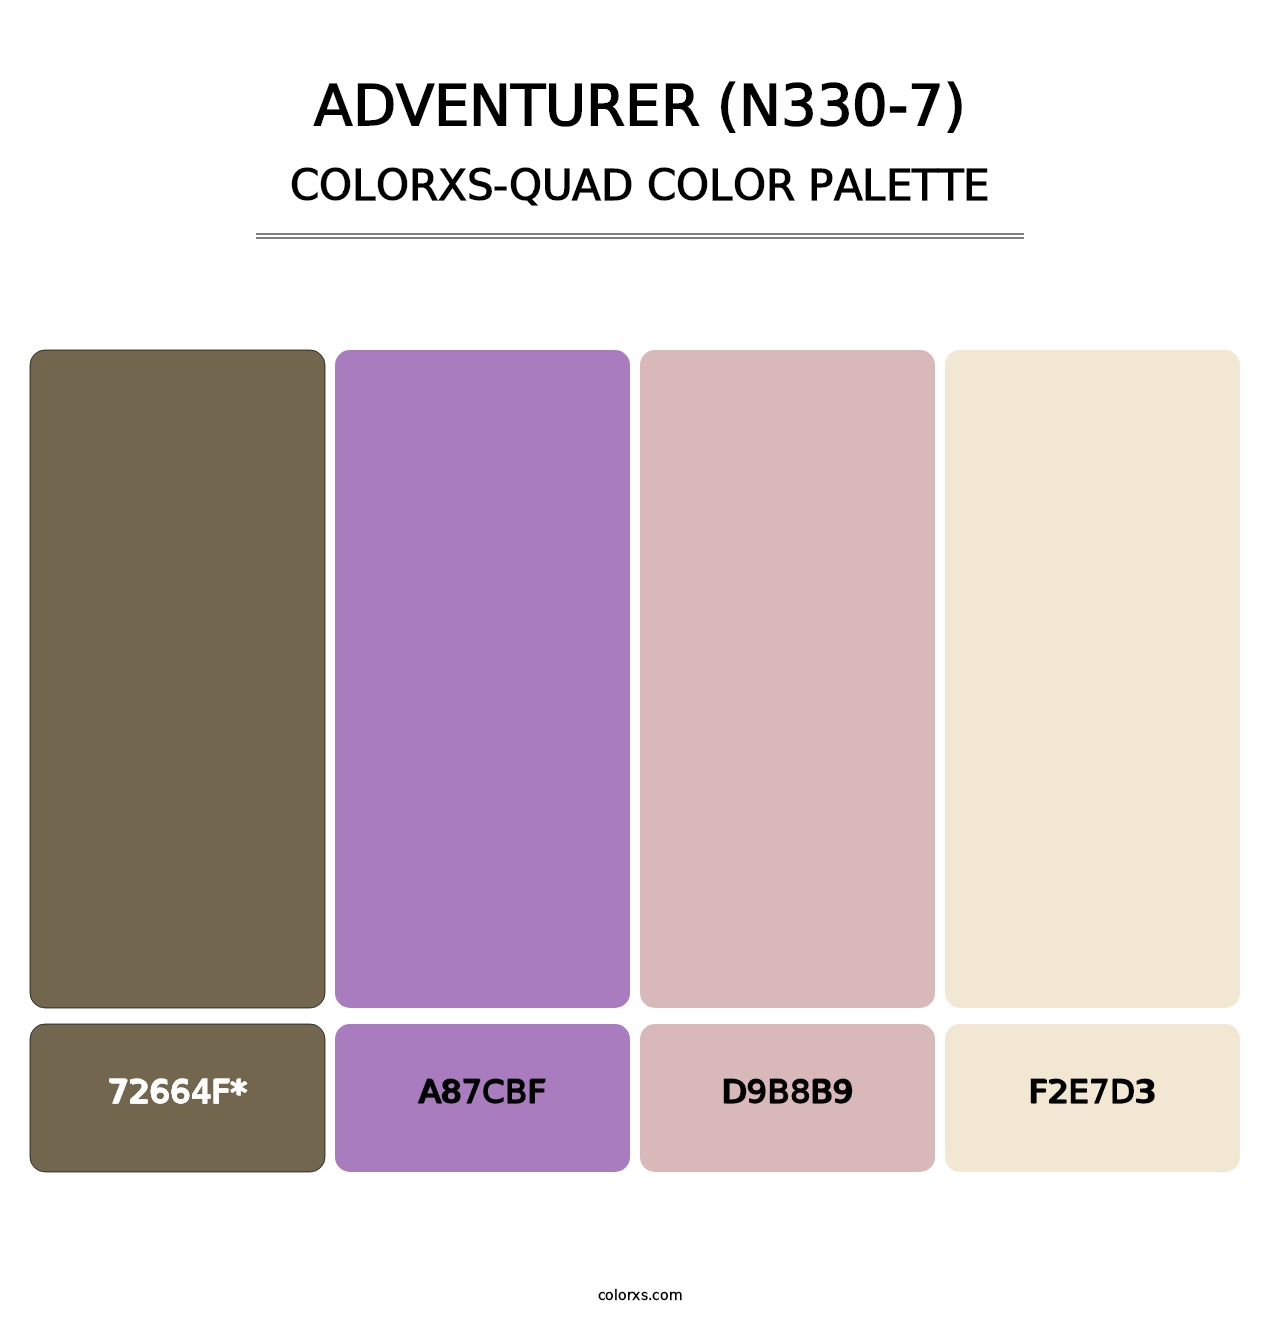 Adventurer (N330-7) - Colorxs Quad Palette